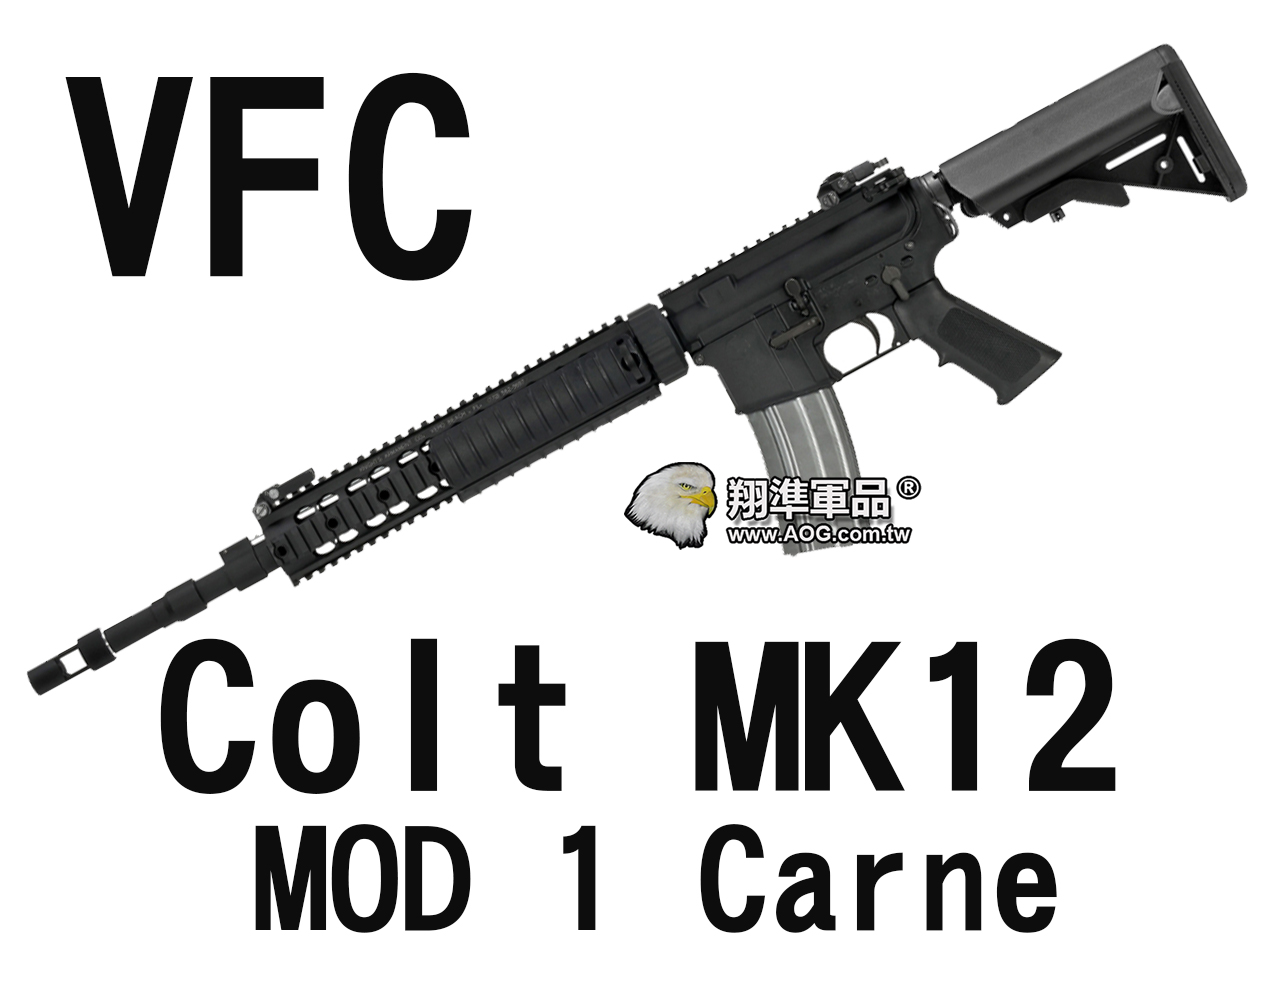 【翔準軍品AOG】【VFC】Colt MK12 MOD 1 Carne 海豹托魚骨版 電動槍 狙擊槍 黑色 VF1-LMK12M1-BK01 